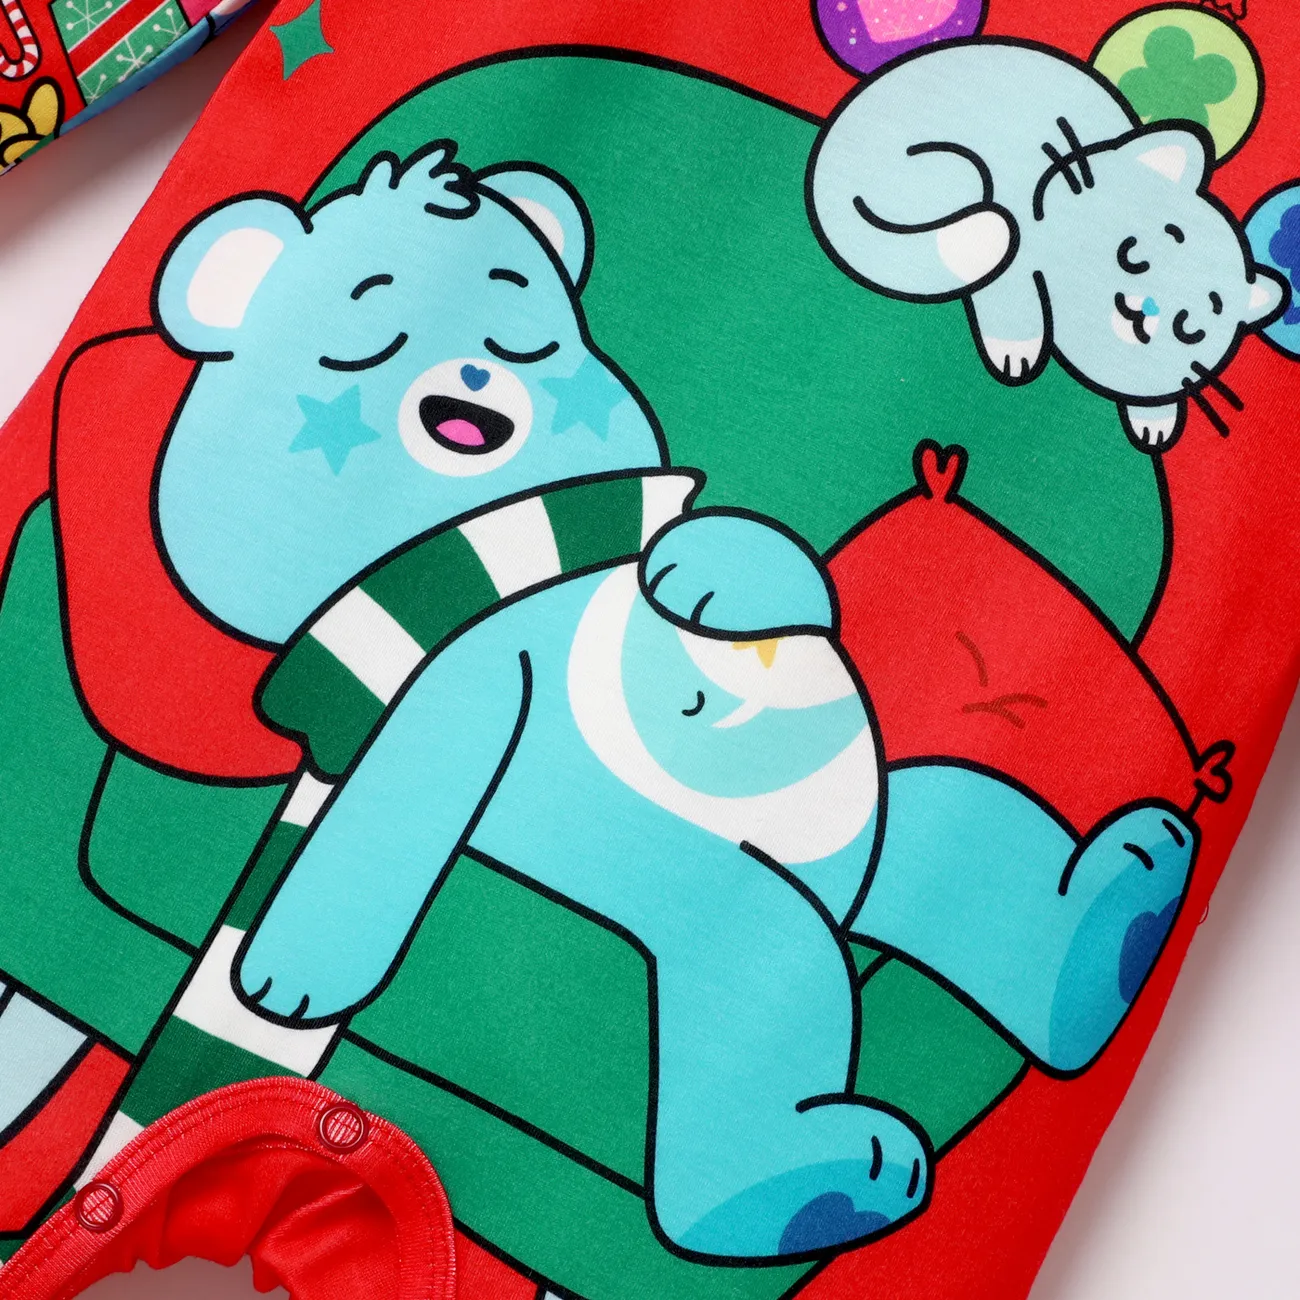 Ursinhos Carinhosos Natal Look de família Manga comprida Conjuntos de roupa para a família Pijamas (Flame Resistant) Vermelho big image 1